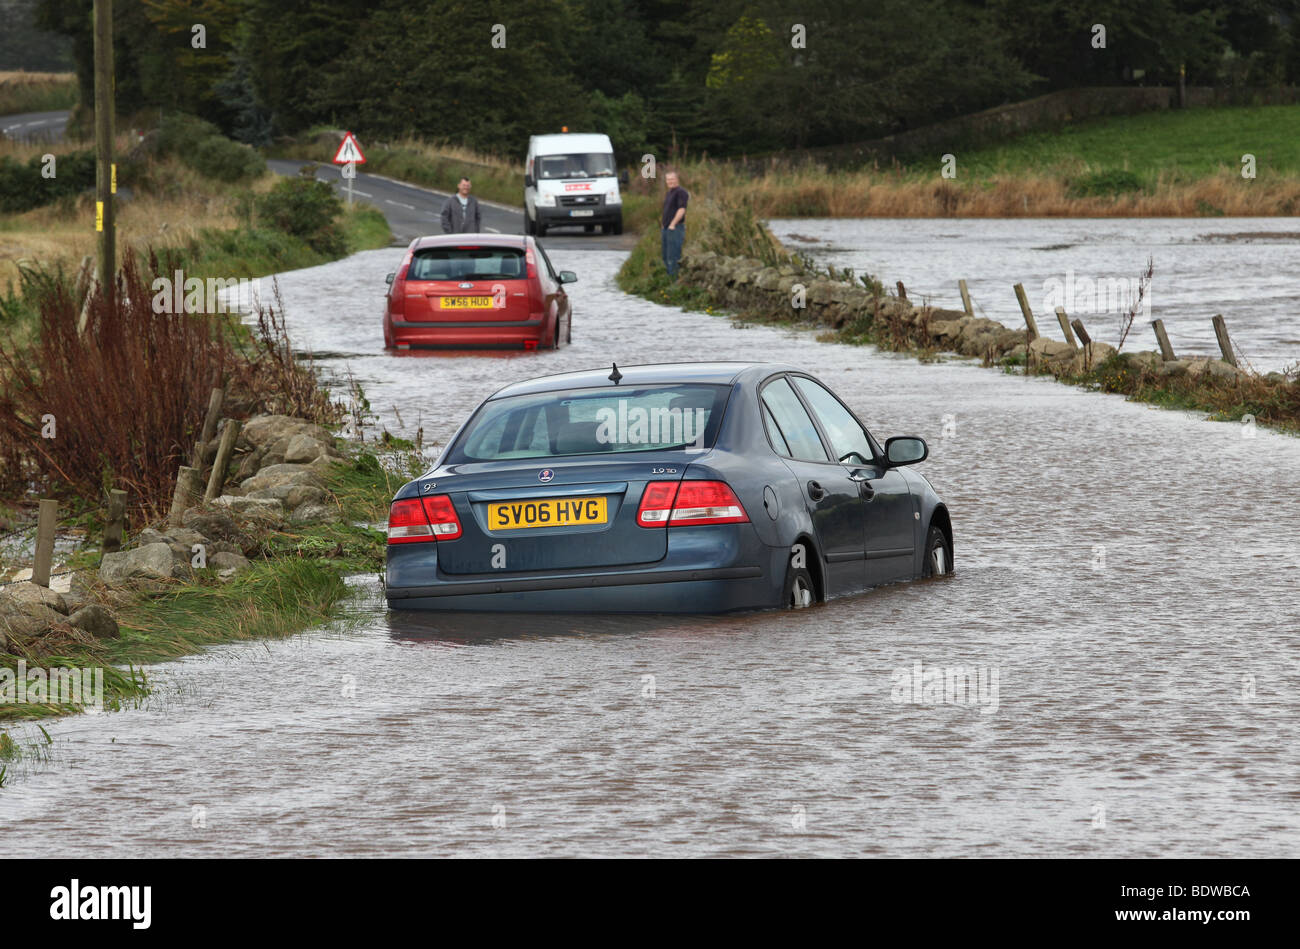 Voitures abandonnés après avoir été capturés dans les eaux de crue sur les routes près de Aberdeen, Écosse, Royaume-Uni, après de fortes pluies Banque D'Images